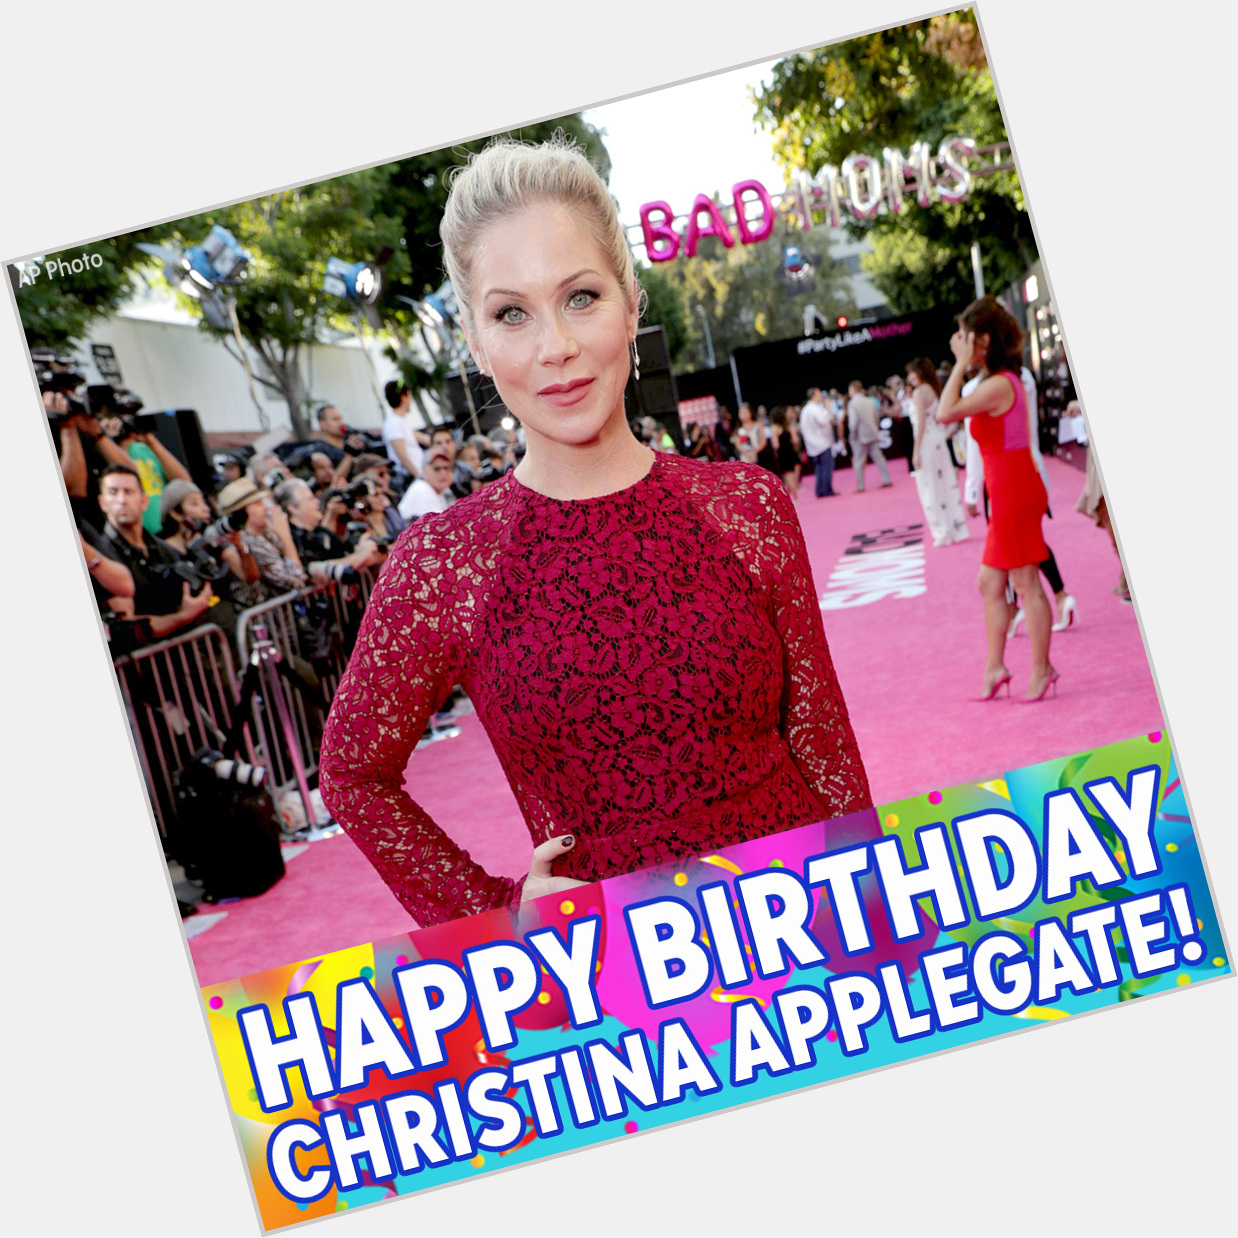 Happy Birthday to Christina Applegate! 